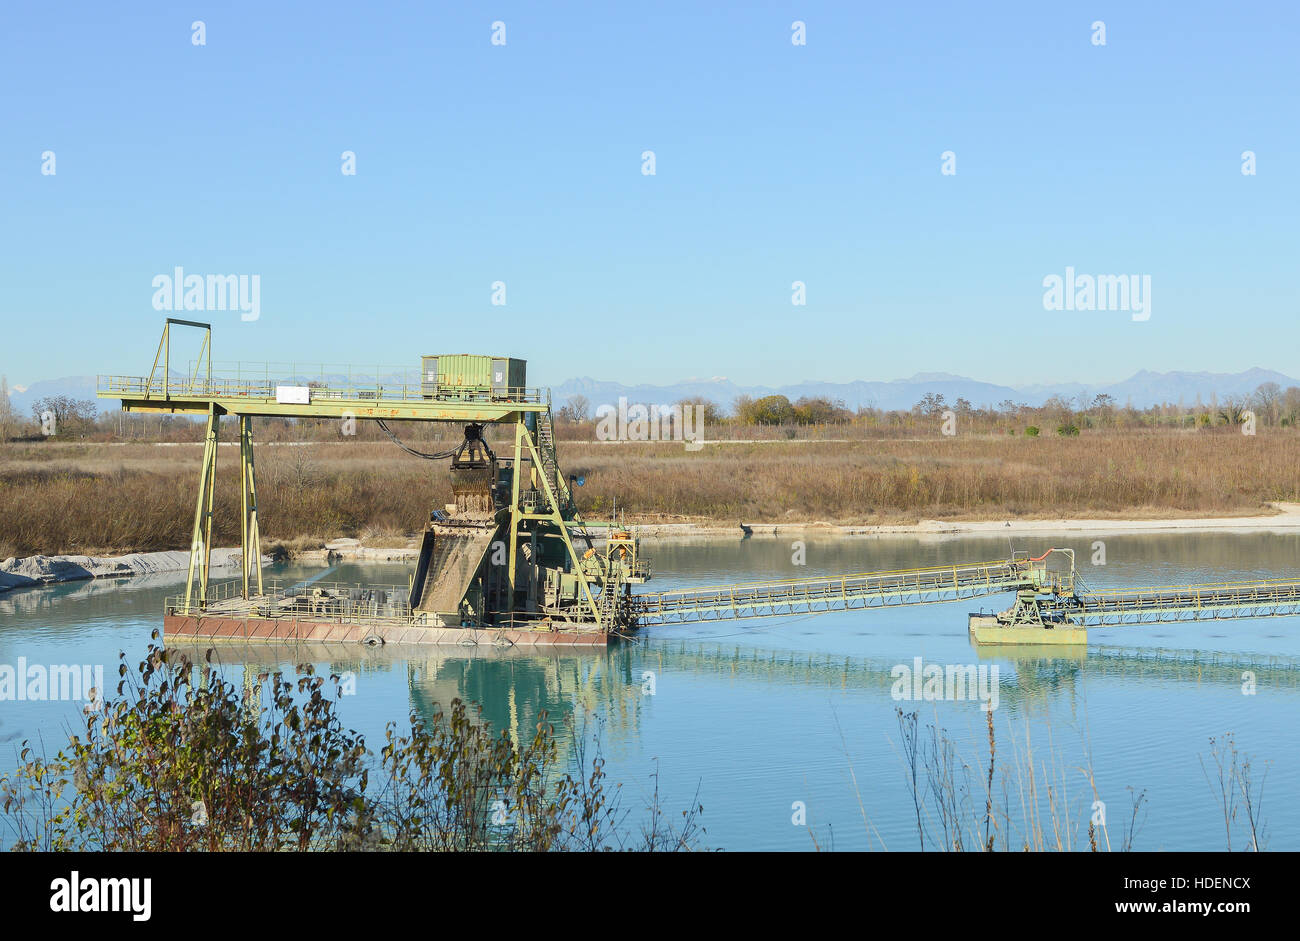 Kiesgrube. Technologie zur Gewinnung von Kies aus einem Steinbruch mit Wasser gefüllt. Stockfoto